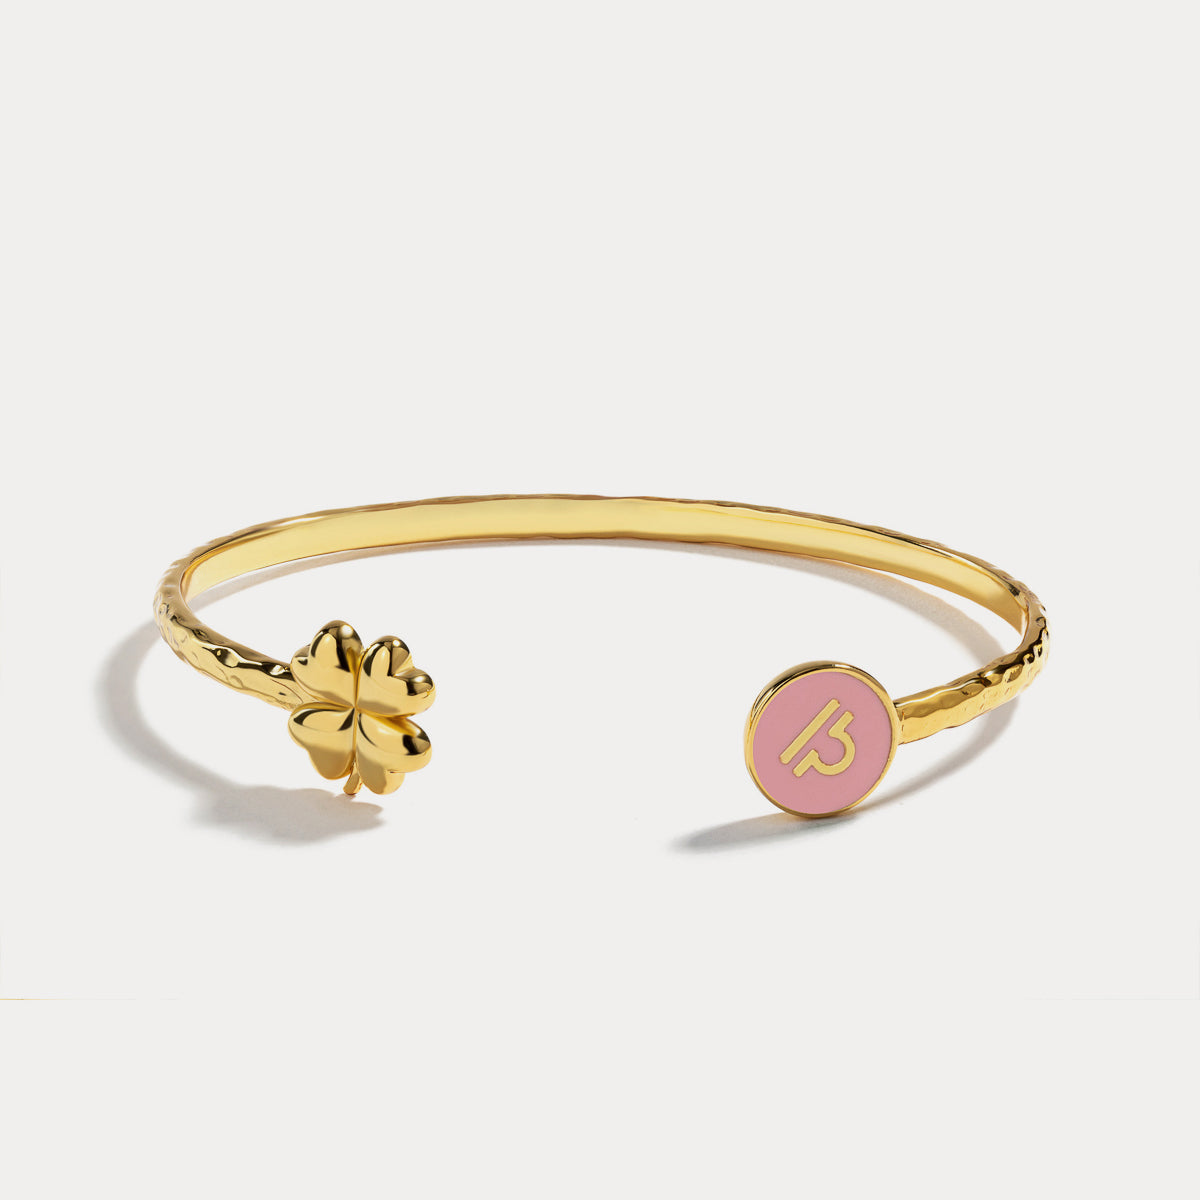 Libra astrological sign bracelet